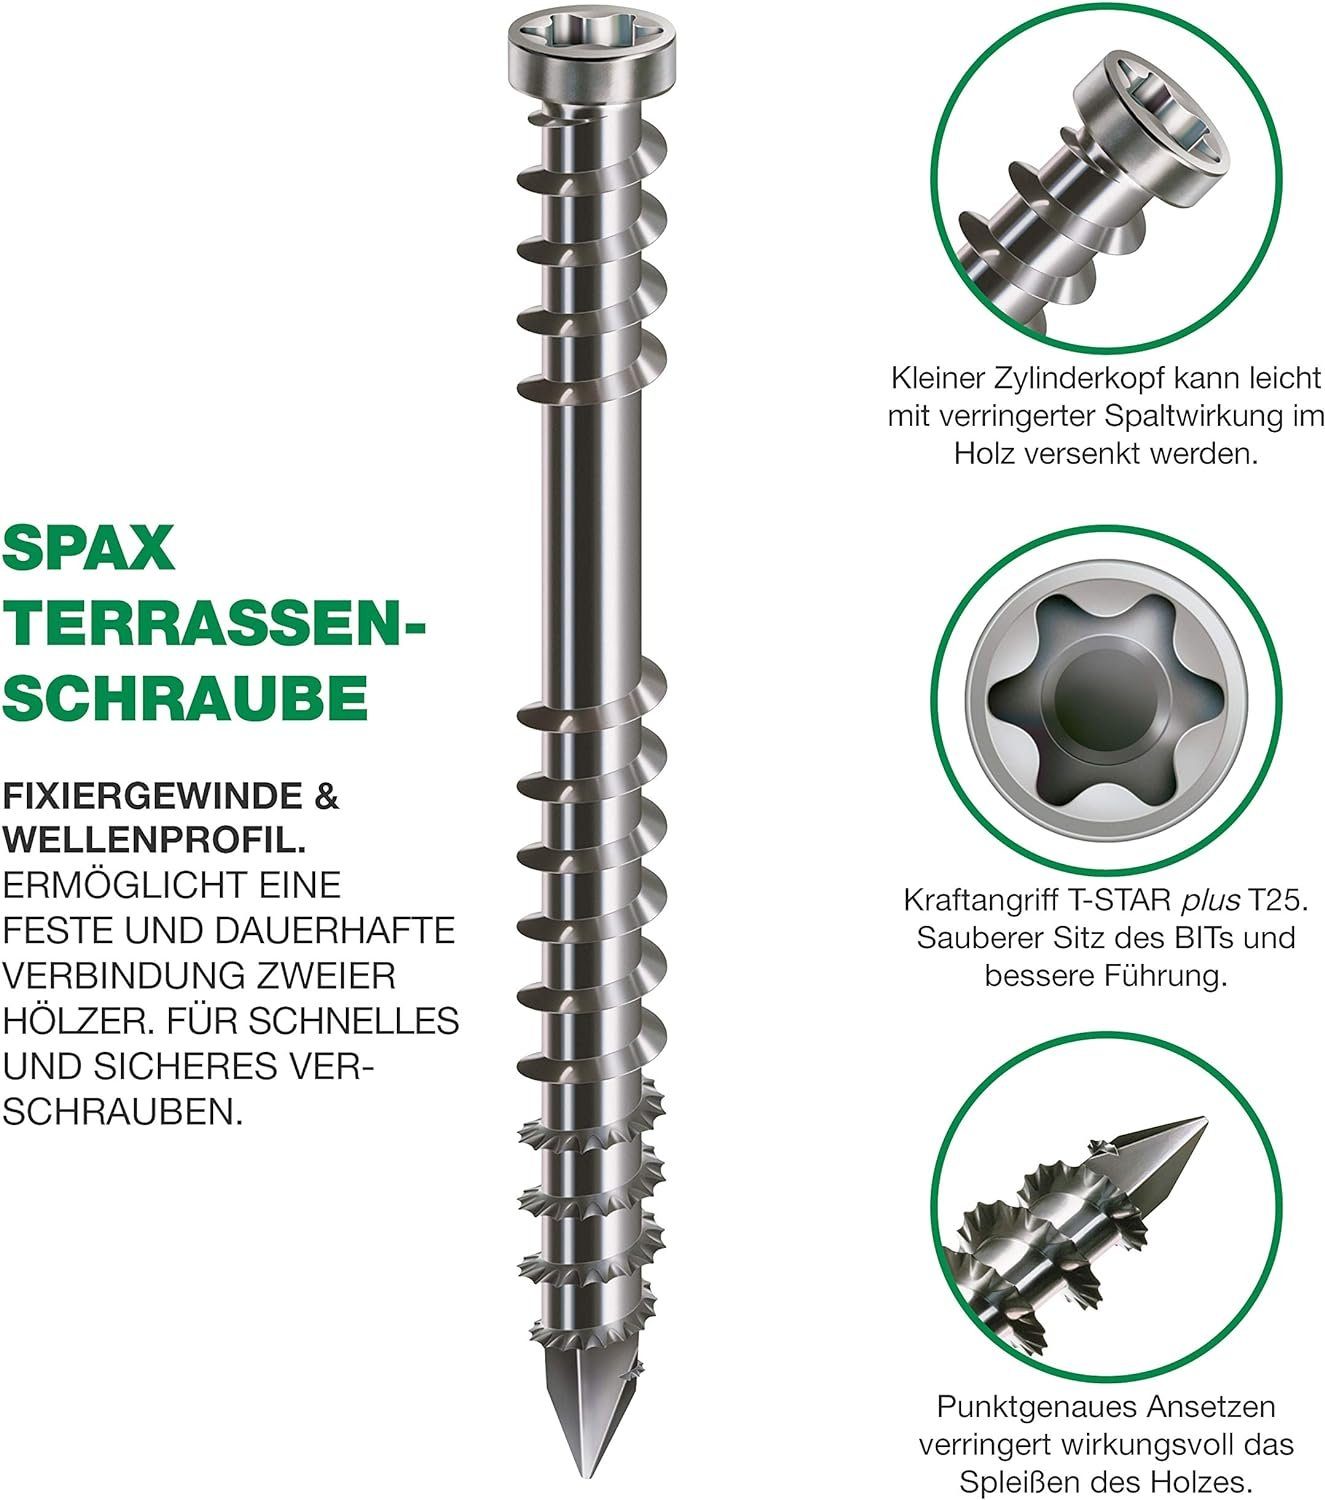 SPAX Schraube Tarressenschraube, (200 St)